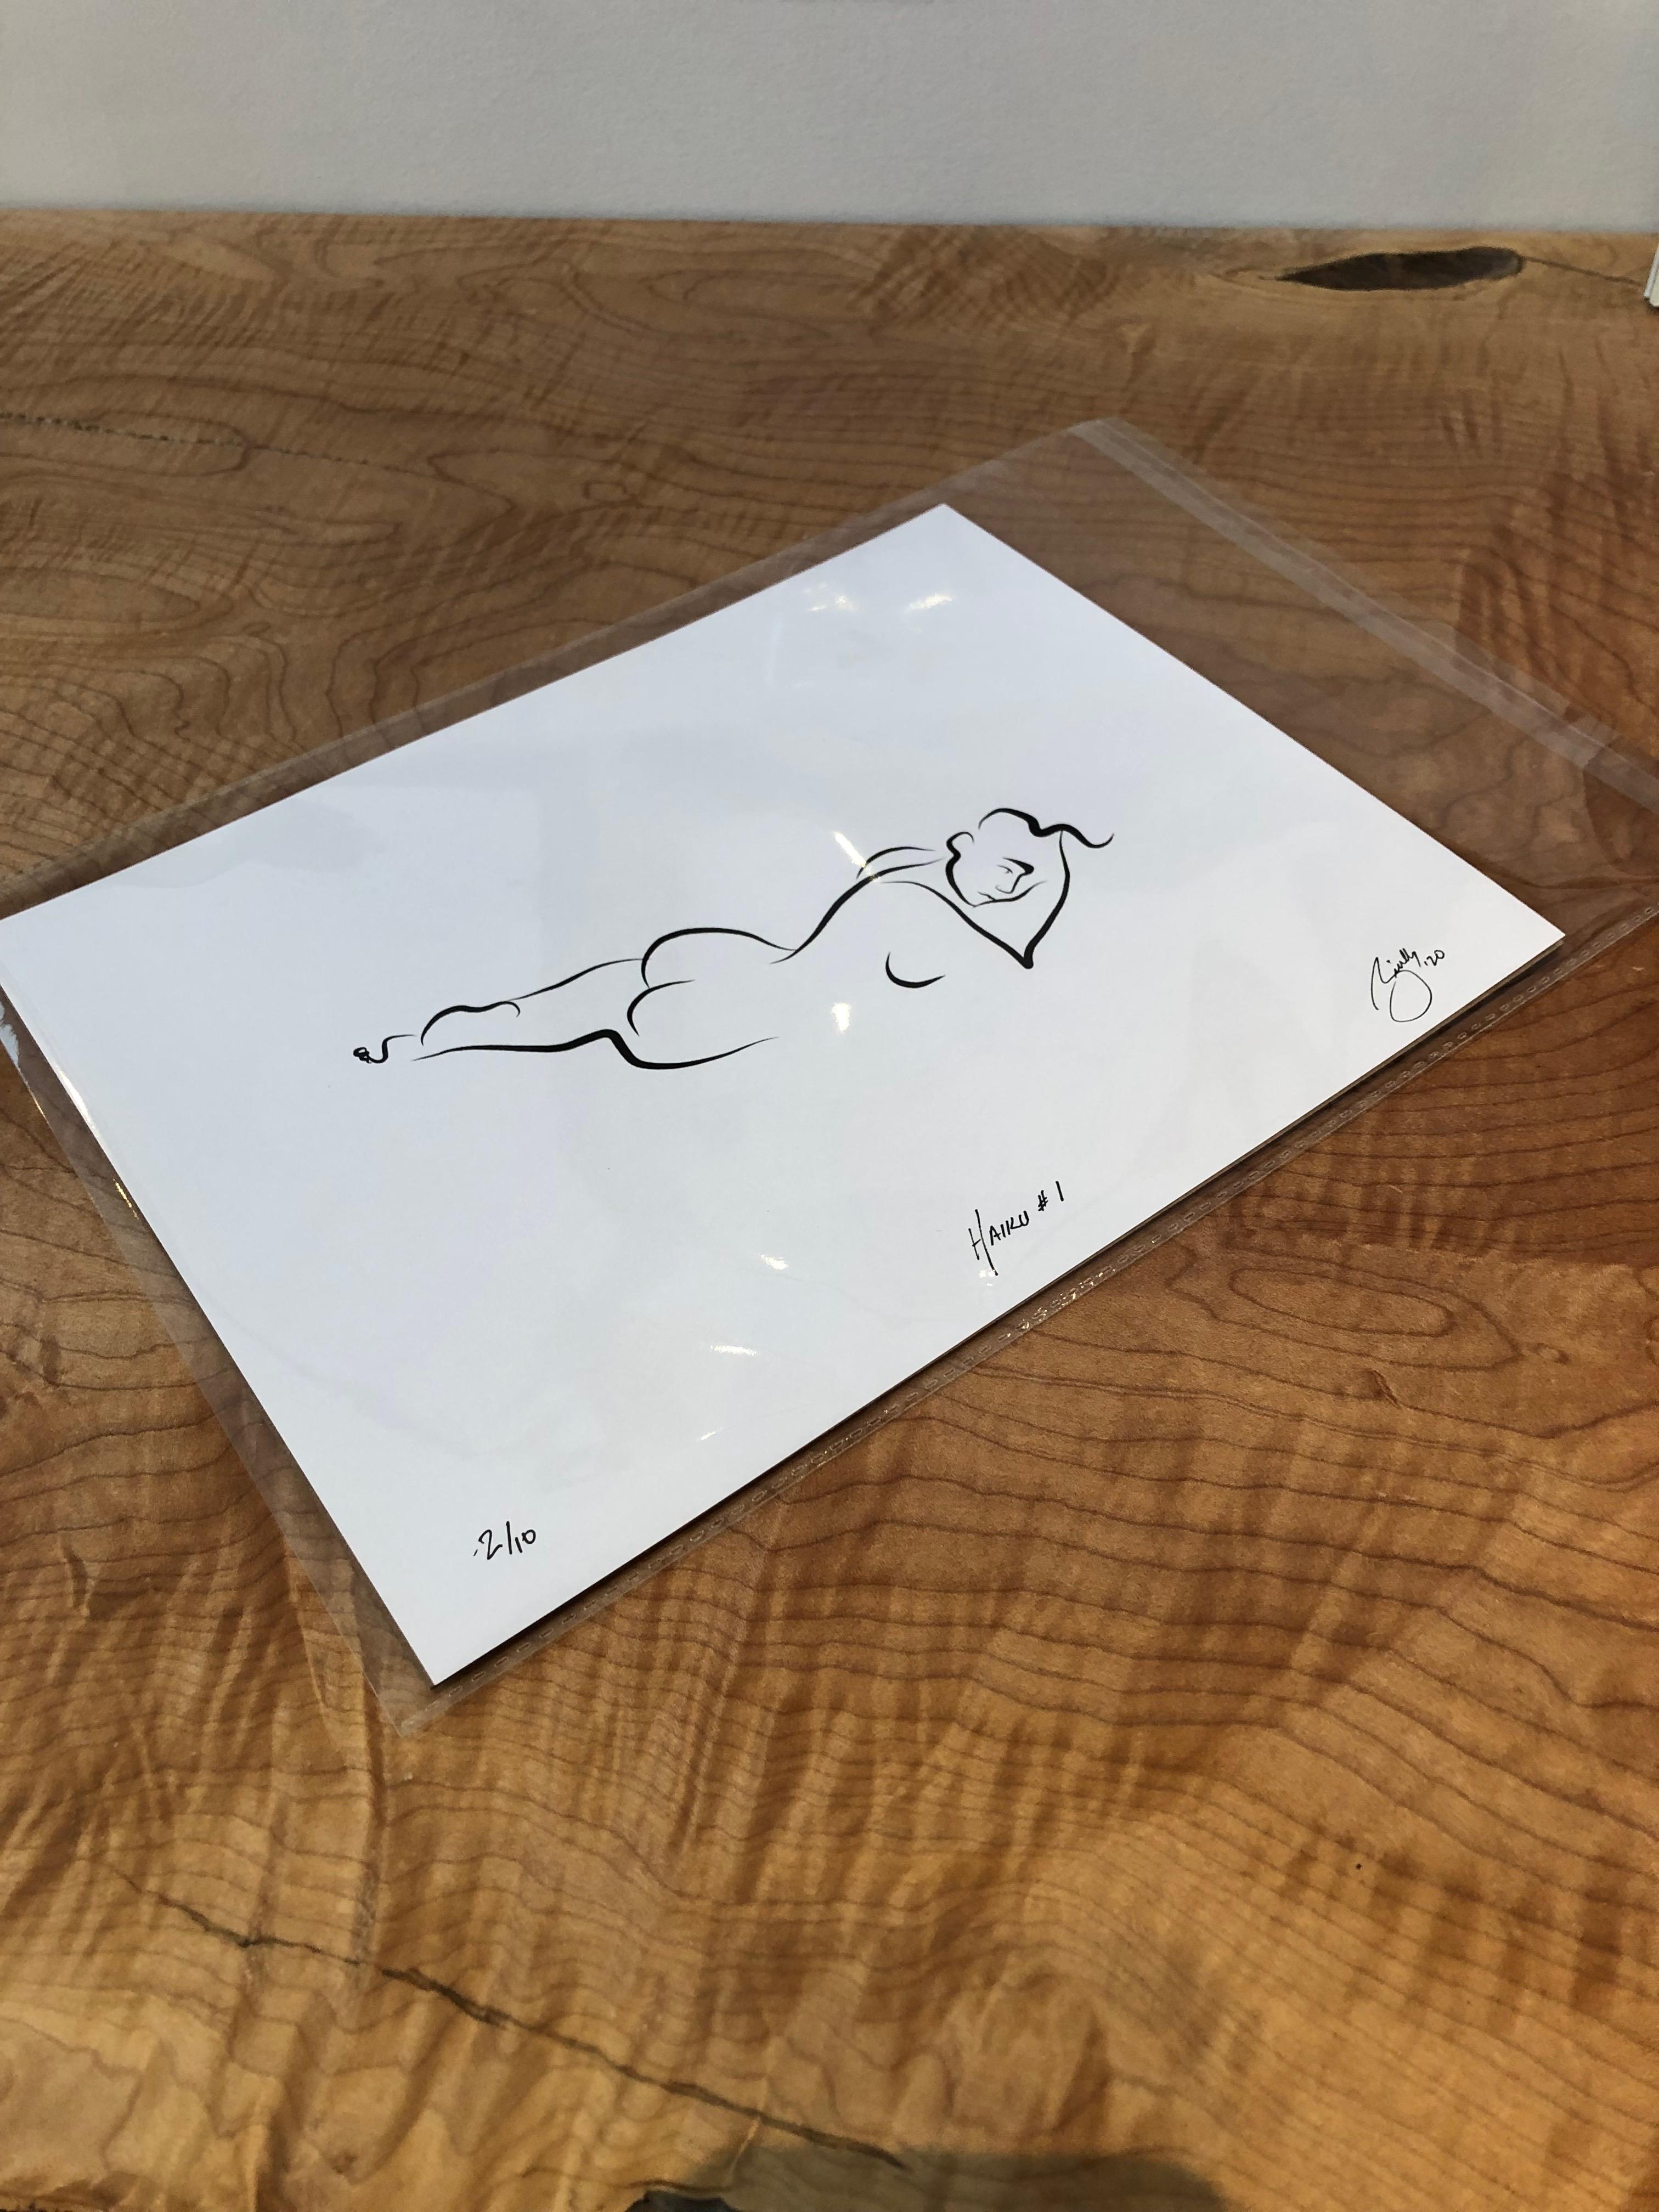 Haiku #1, 1/50 - Digital Vector Drawing Reclining Female Nude Woman Figure - Print by Michael Binkley